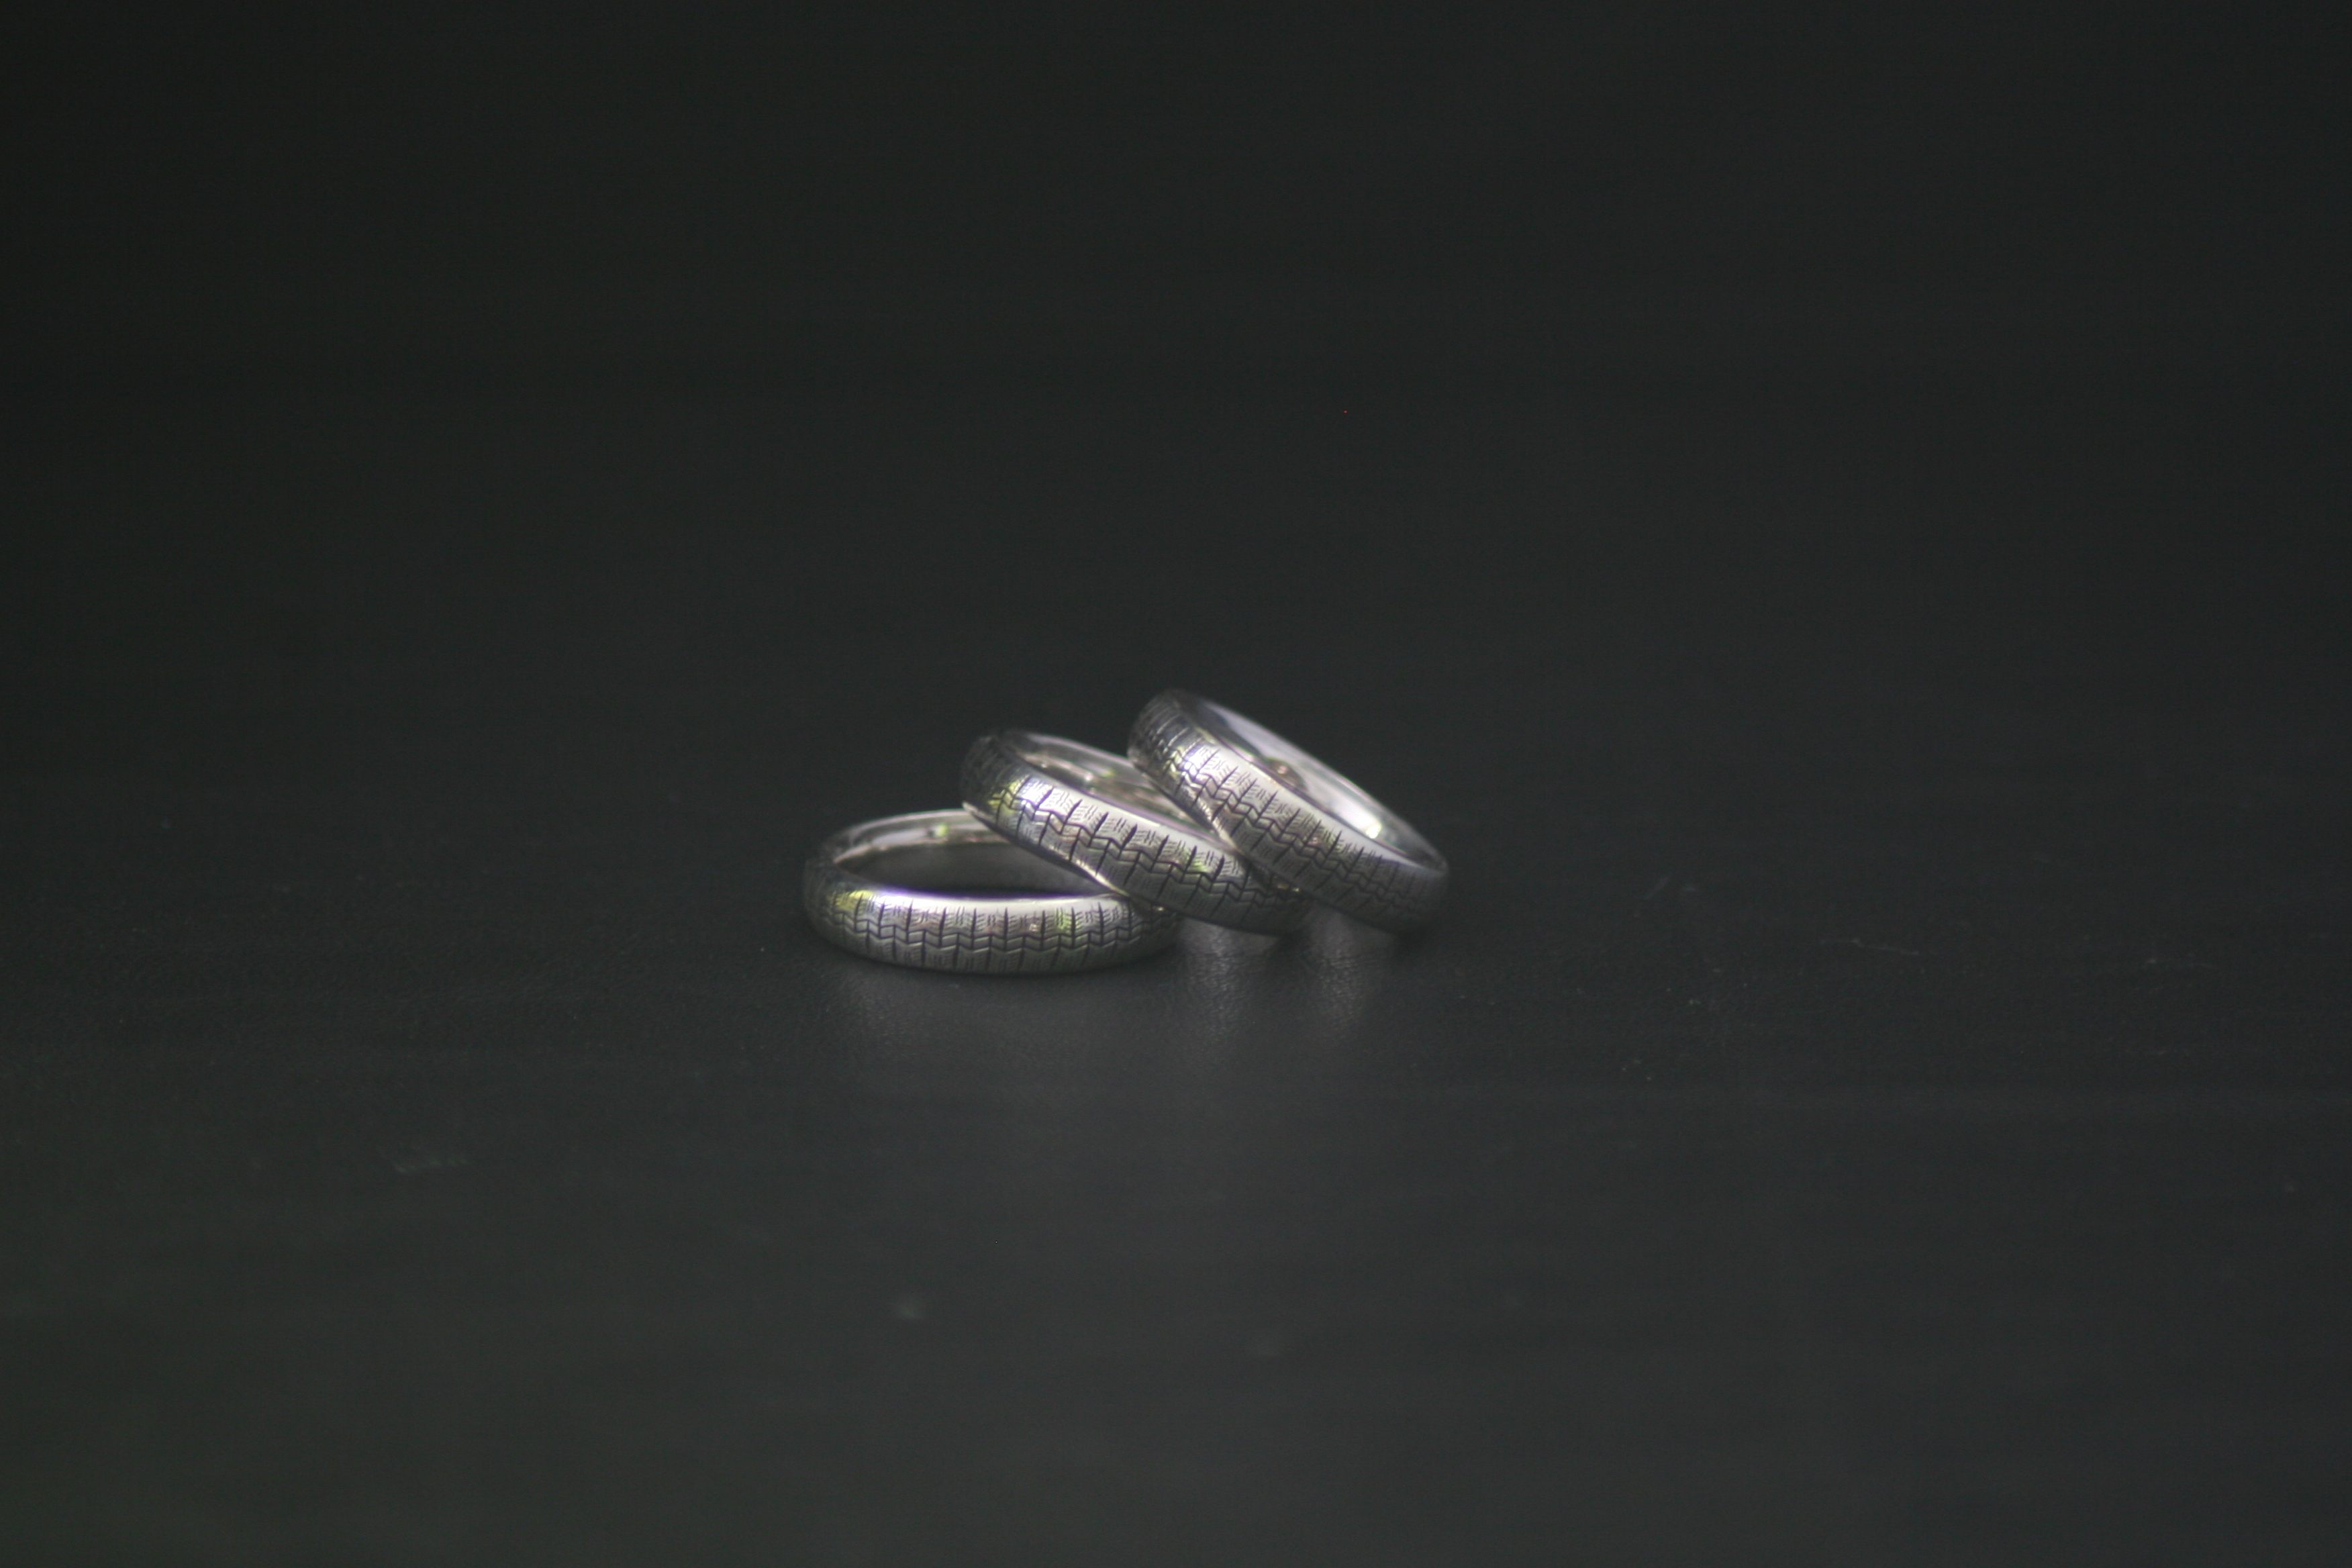 Citroen Tire ring  silver 6mm wide michelin profile